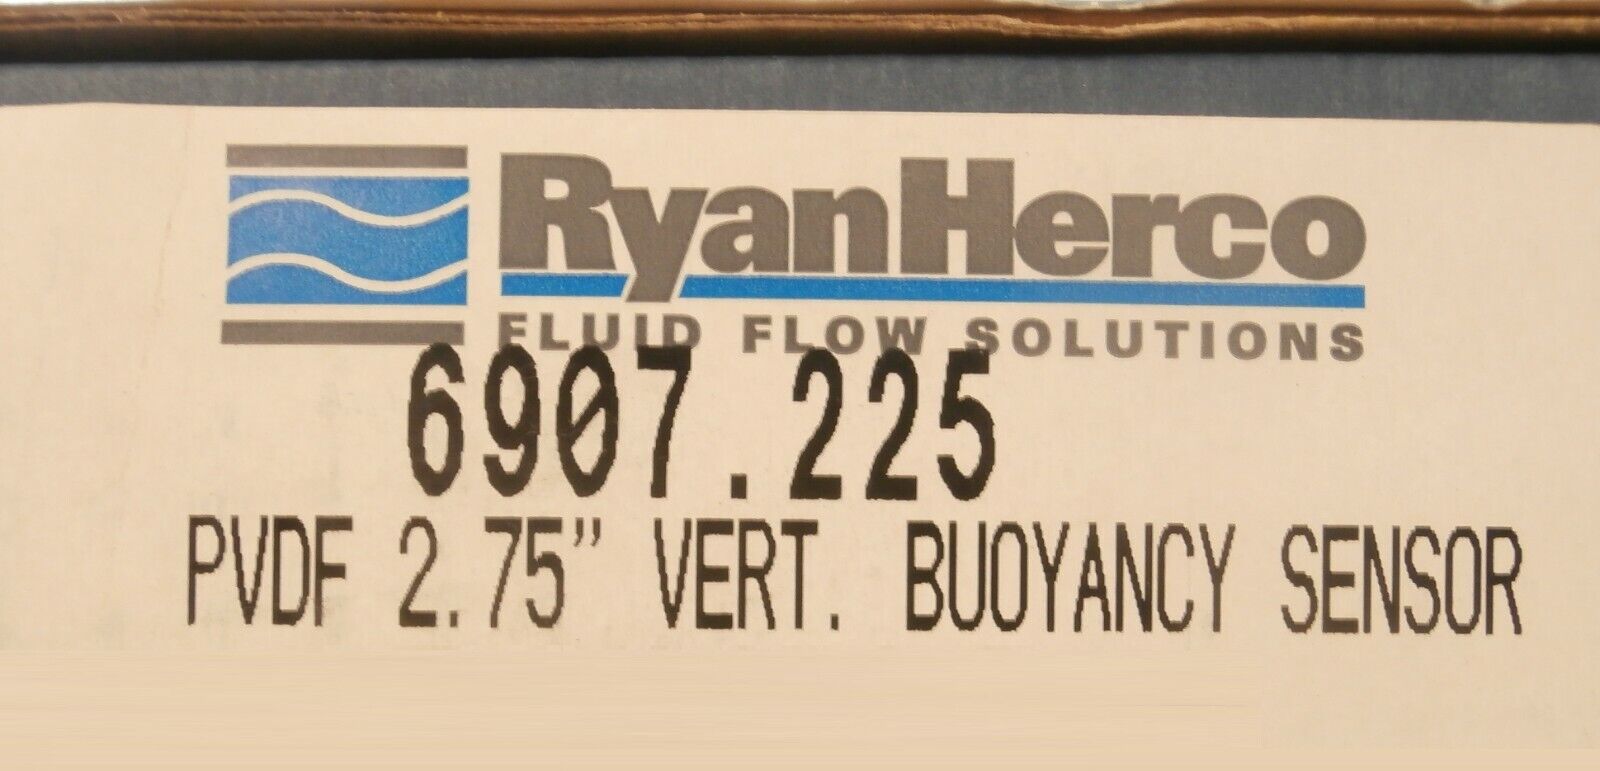 Ryan Herco LV10-5201 PVDF 2.75" Vertical Buoyancy Sensor New Surplus